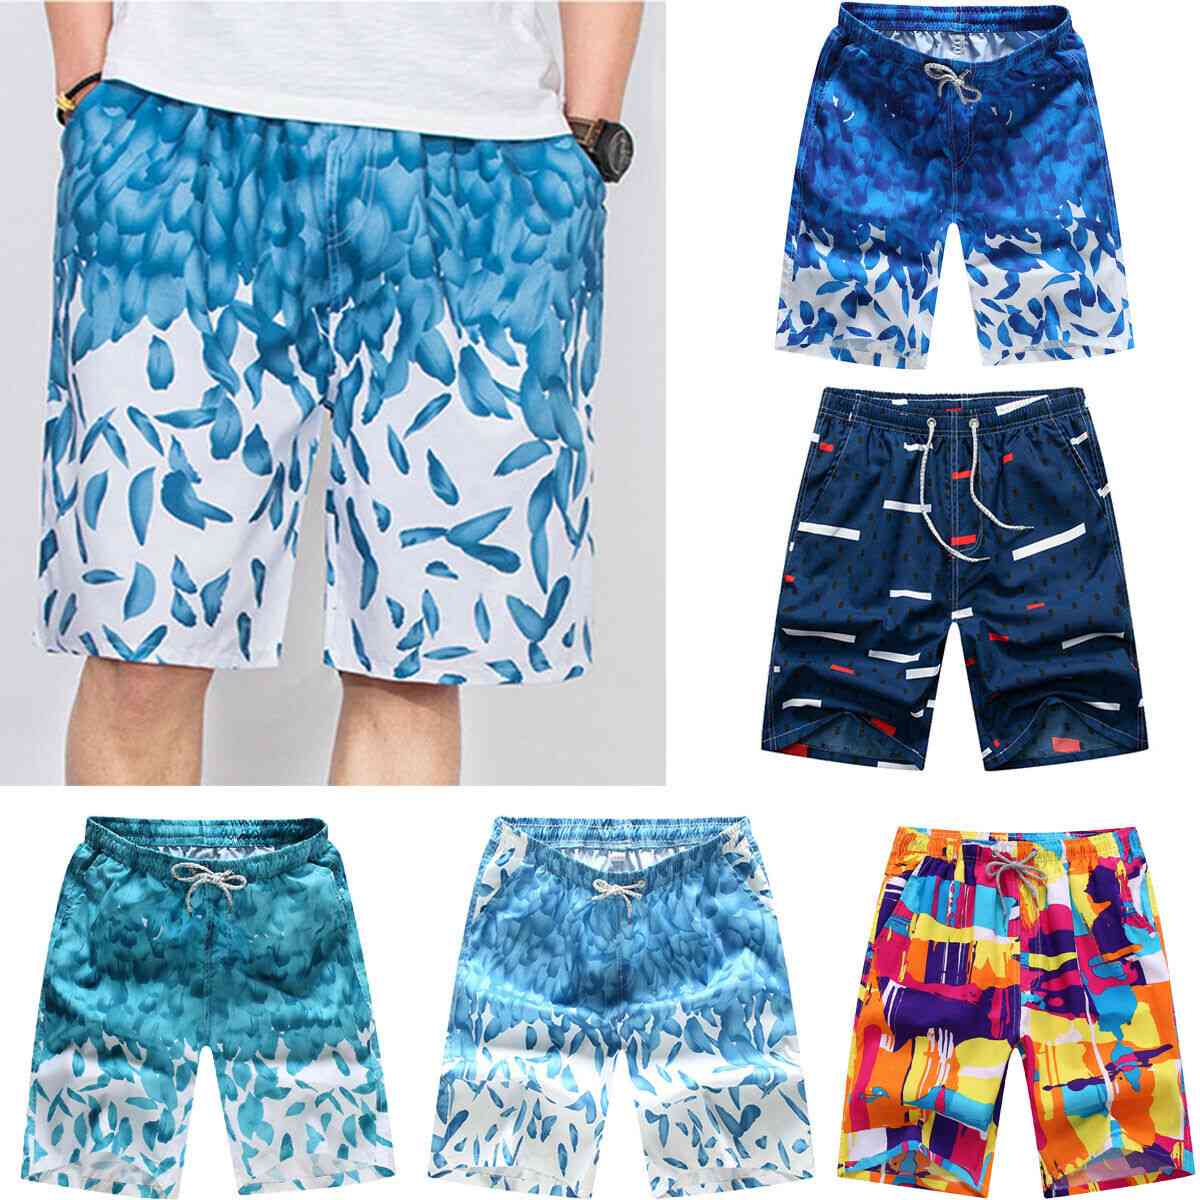 Pantalones cortos de la playa de los troncos de la nadada de los hombres, pantalones deportivos de verano transpirables